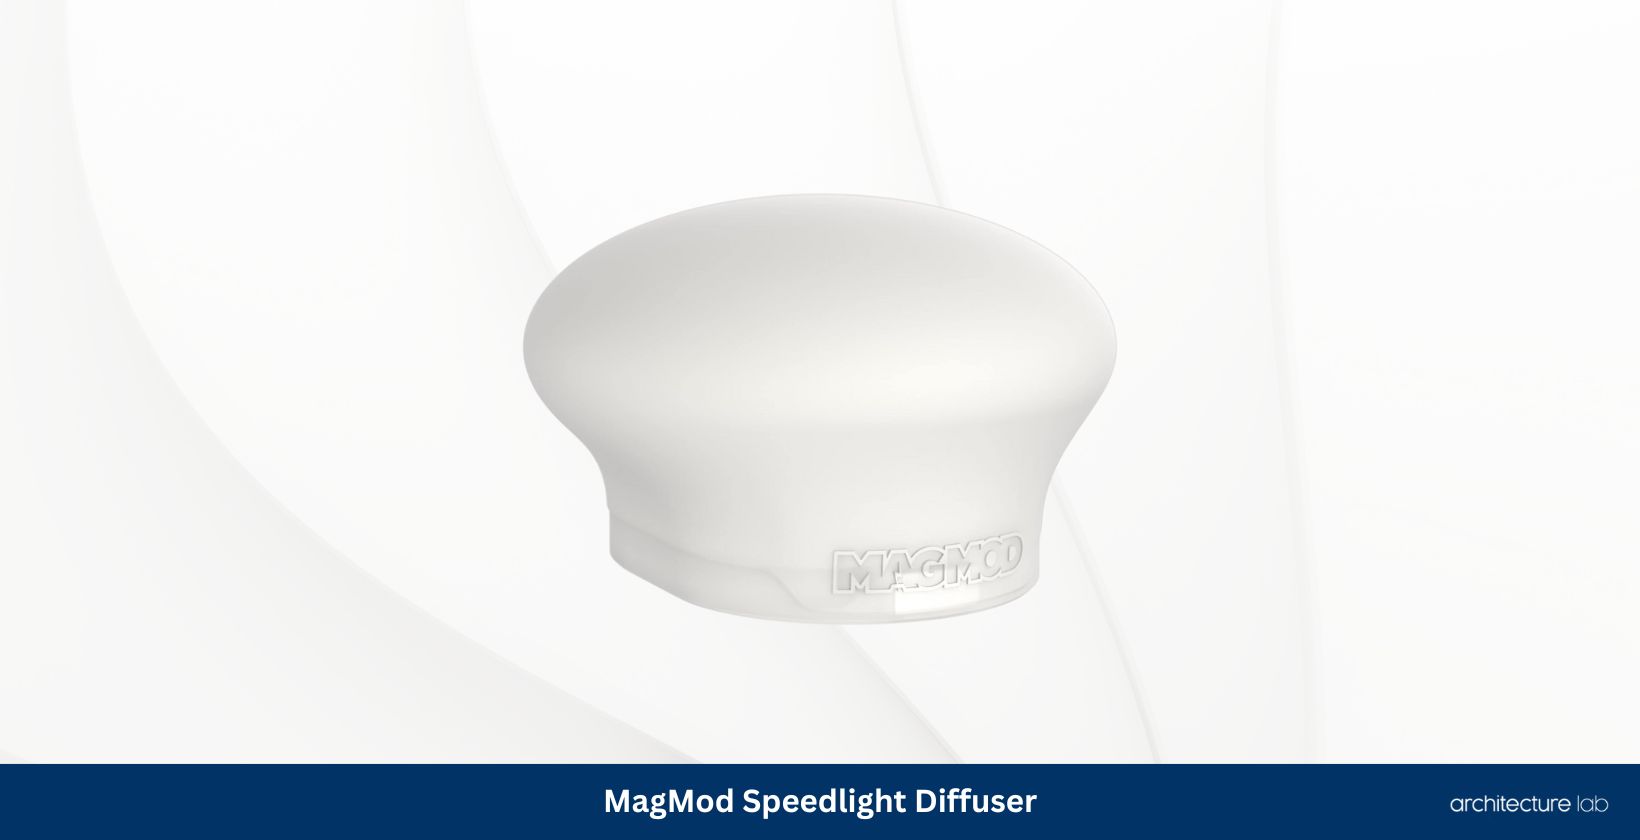 Magmod speedlight diffuser